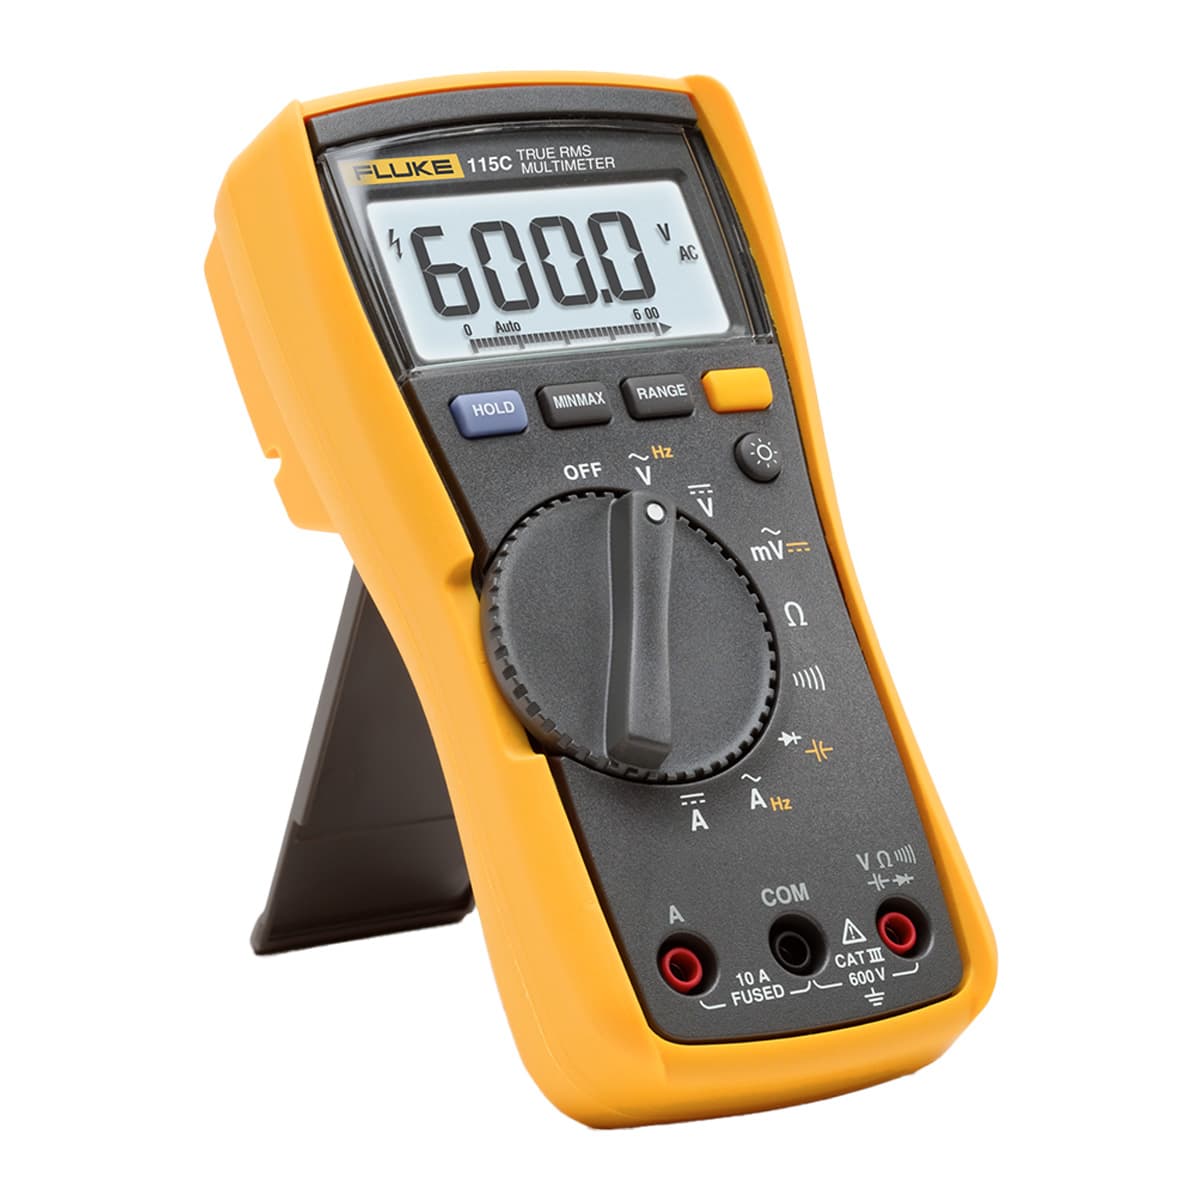 imagen principal de producto Multímetro digital básico TRMS para soluciones eléctricas y electrónicas. FLUKE-115/EM ESP